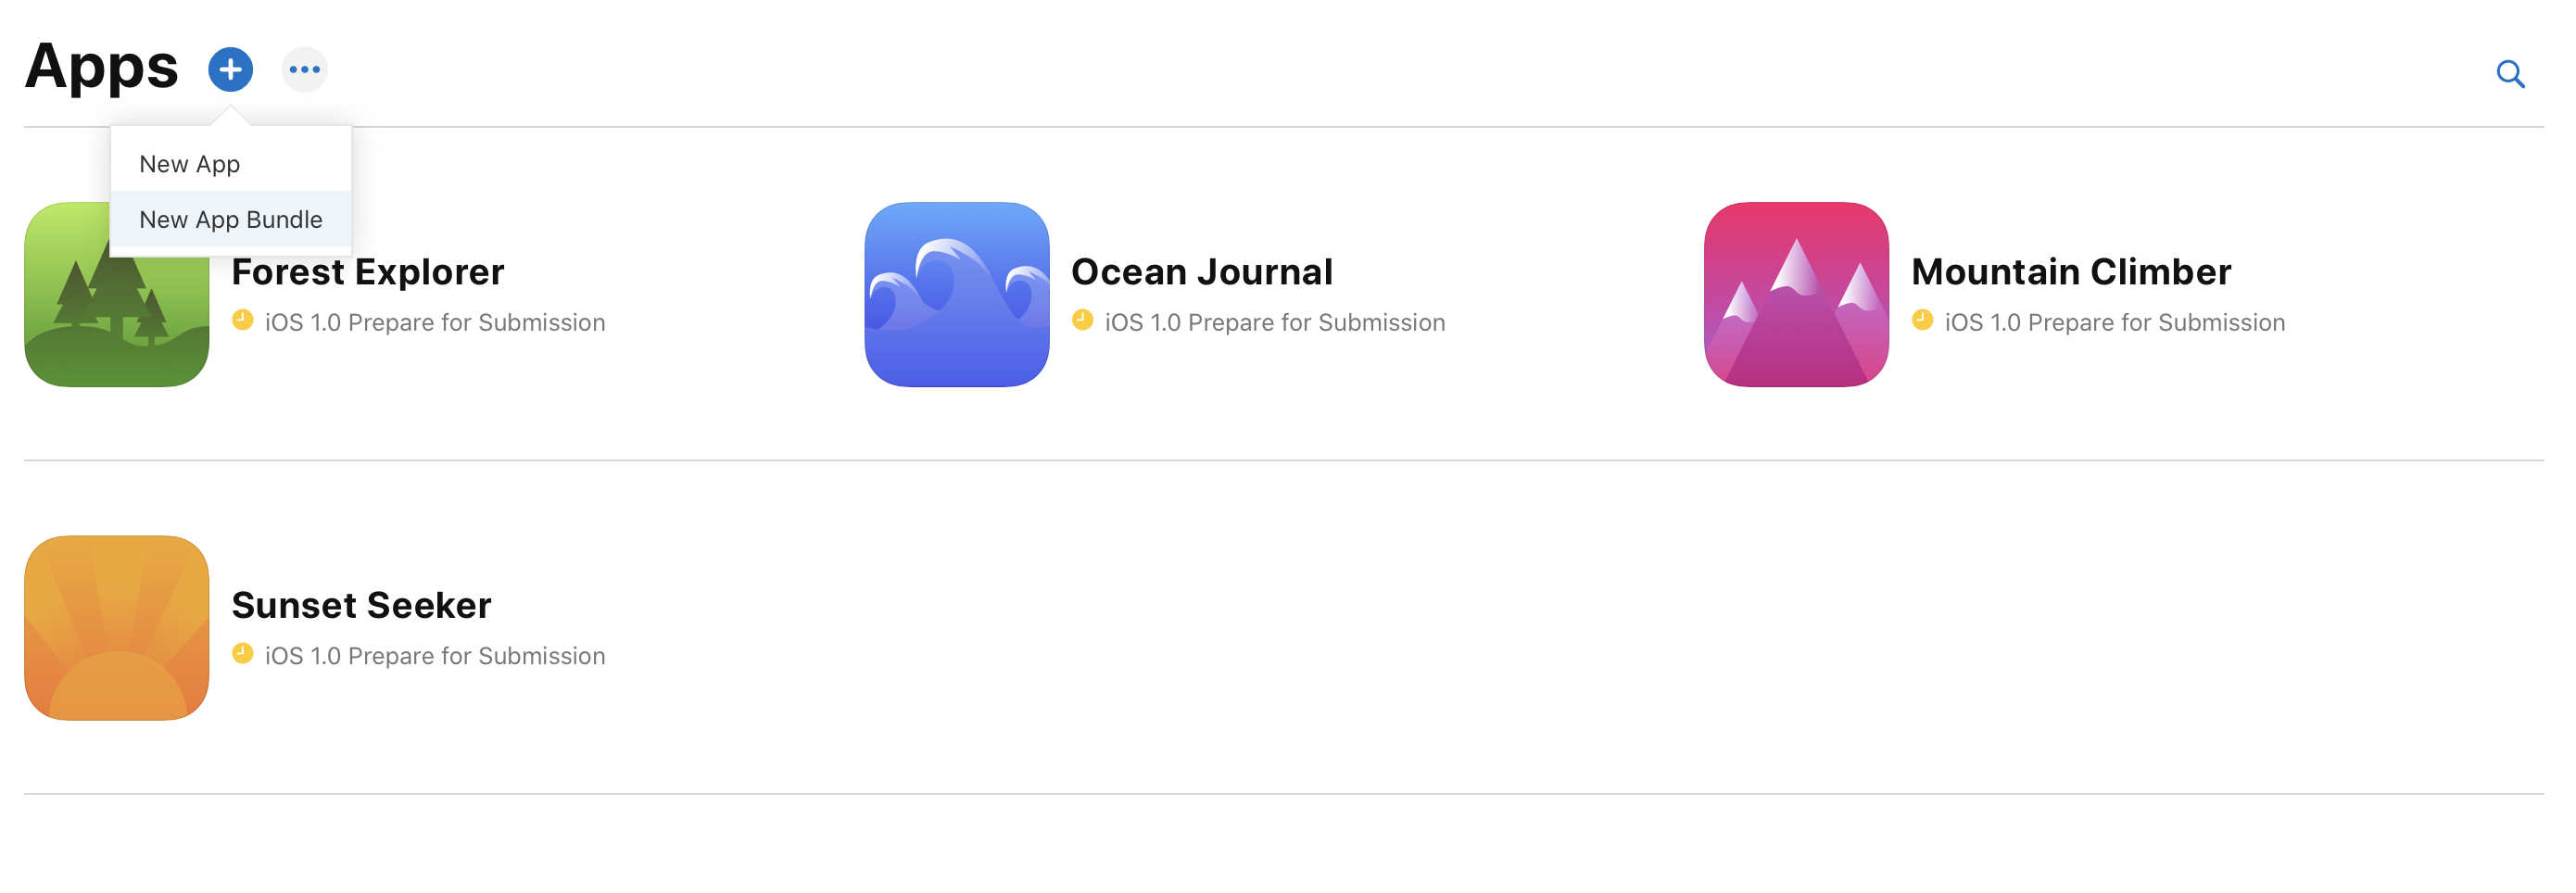 在“App”页面点按左上角的添加按钮，菜单中显示着“新建 App”和“新建 App 套装”的选项。